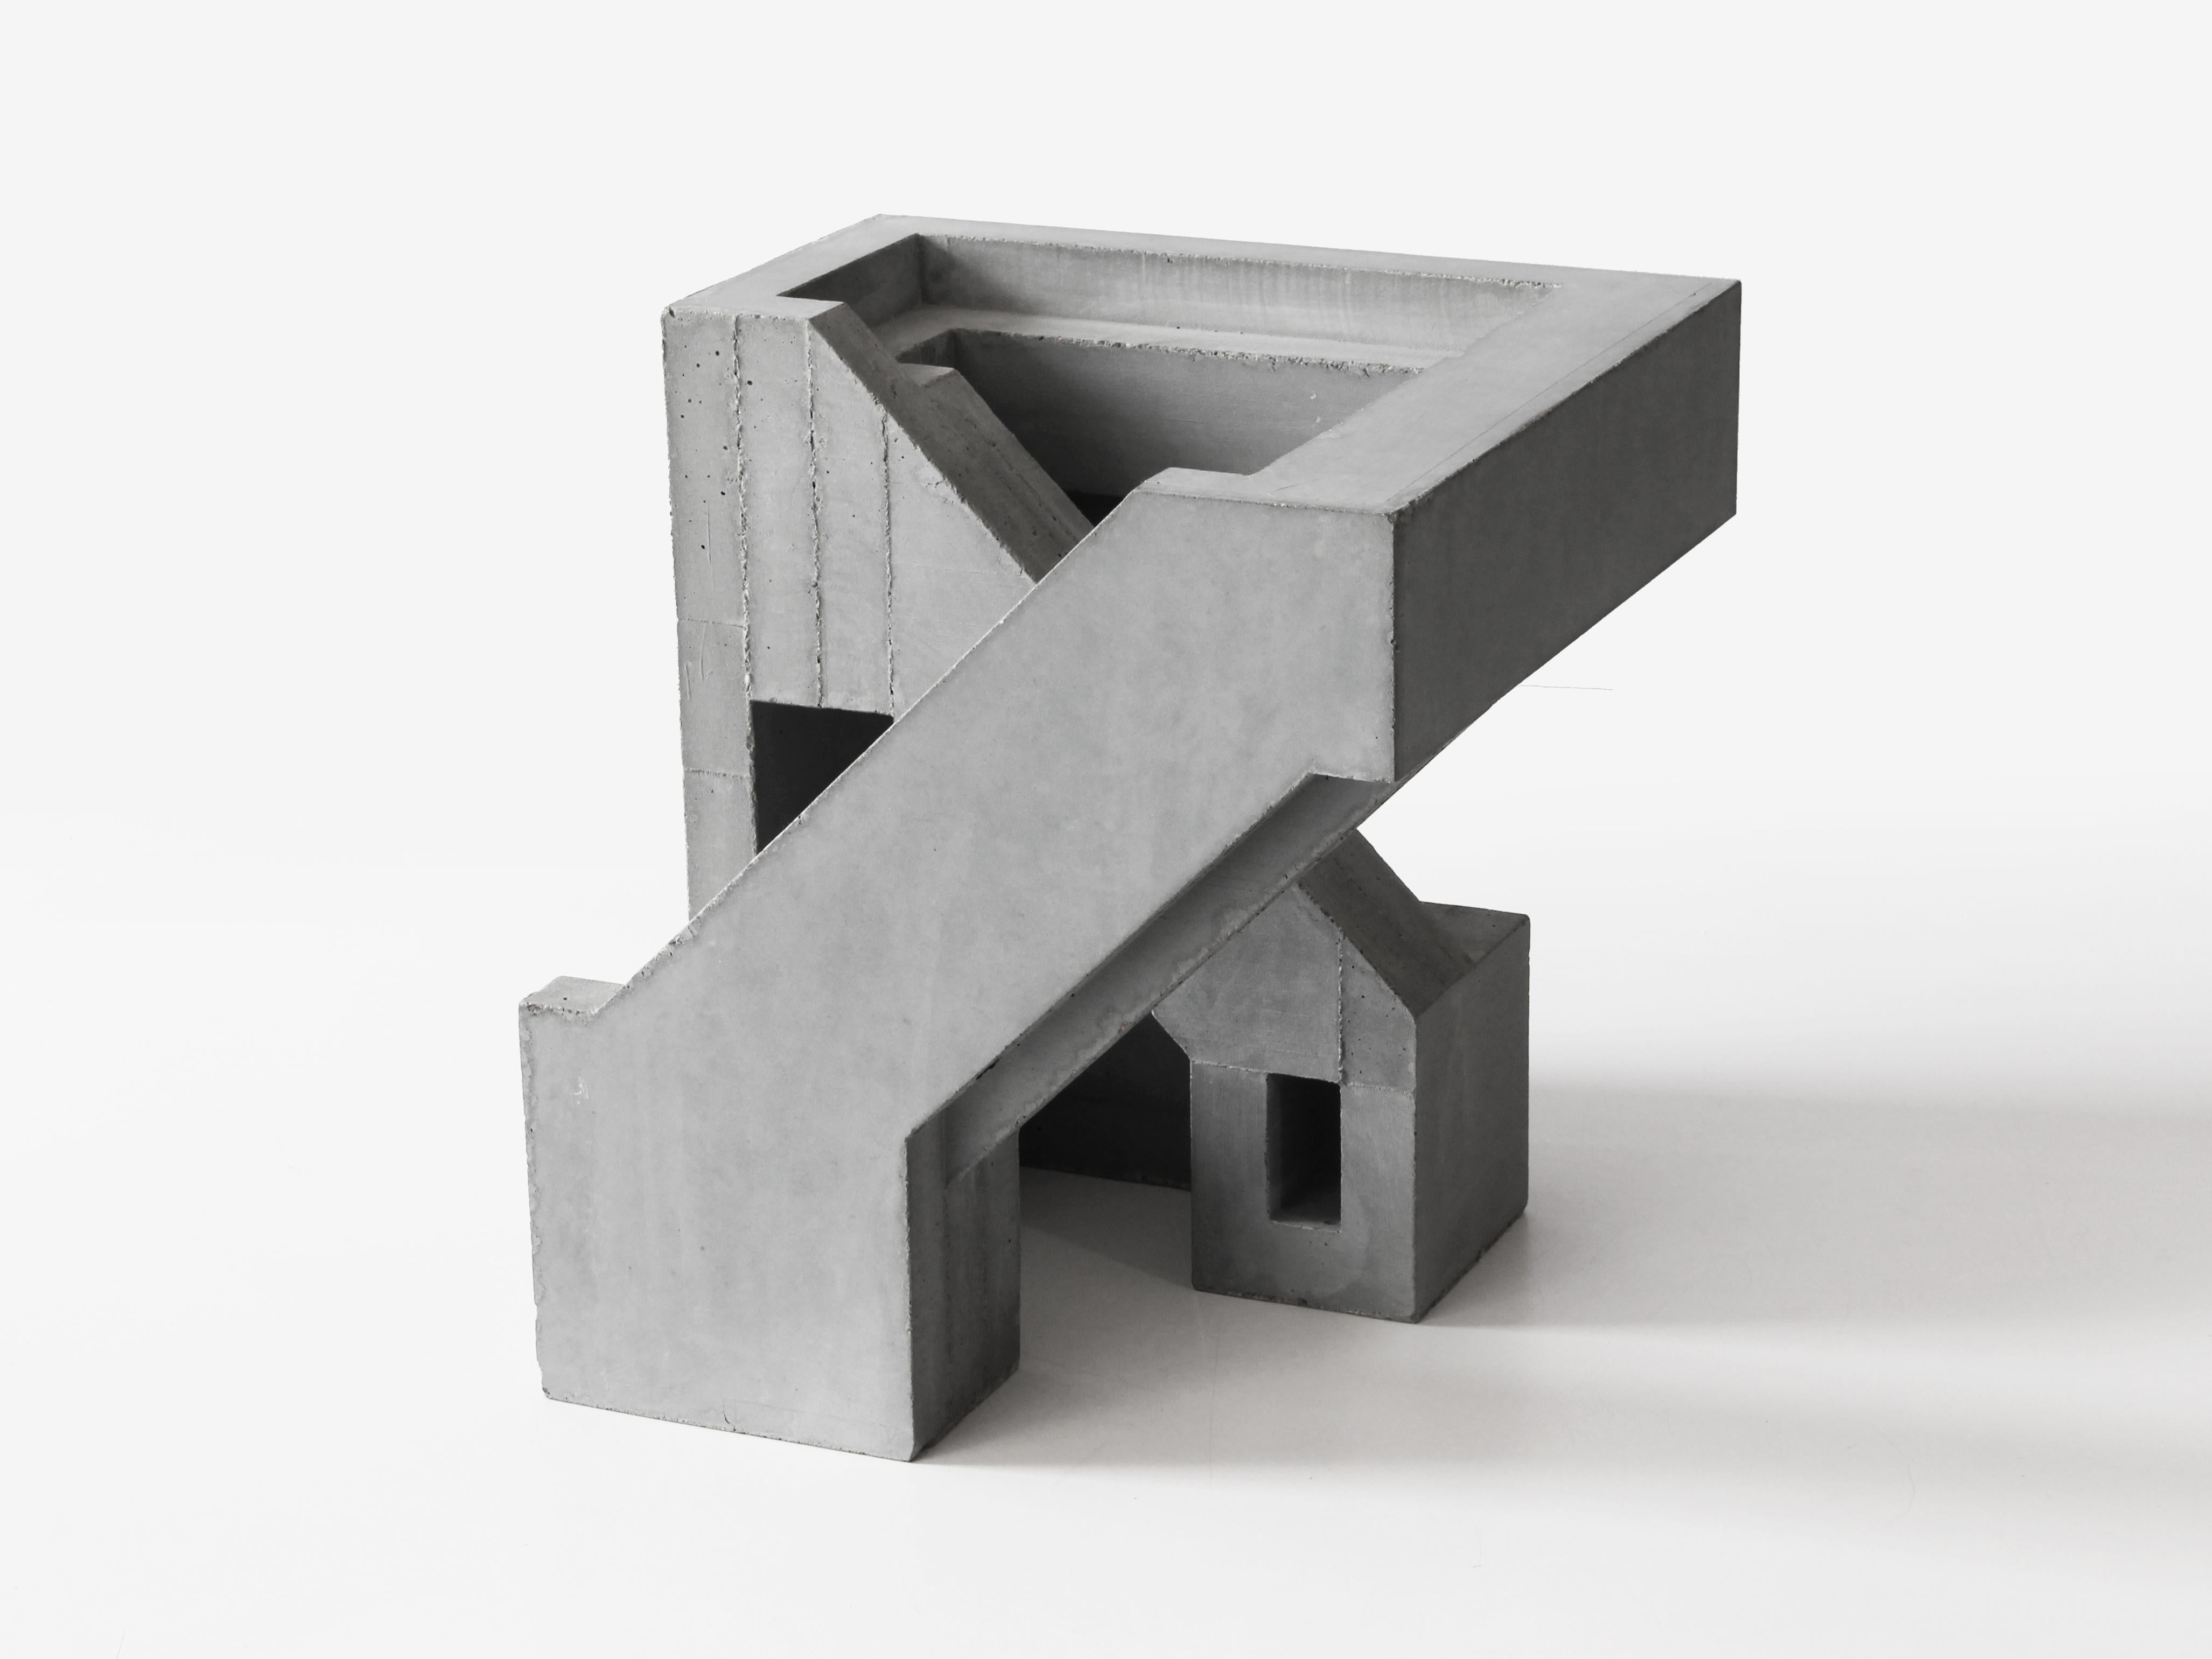 David Umemoto Figurative Sculpture - Cubic Geometry TWELVE:5